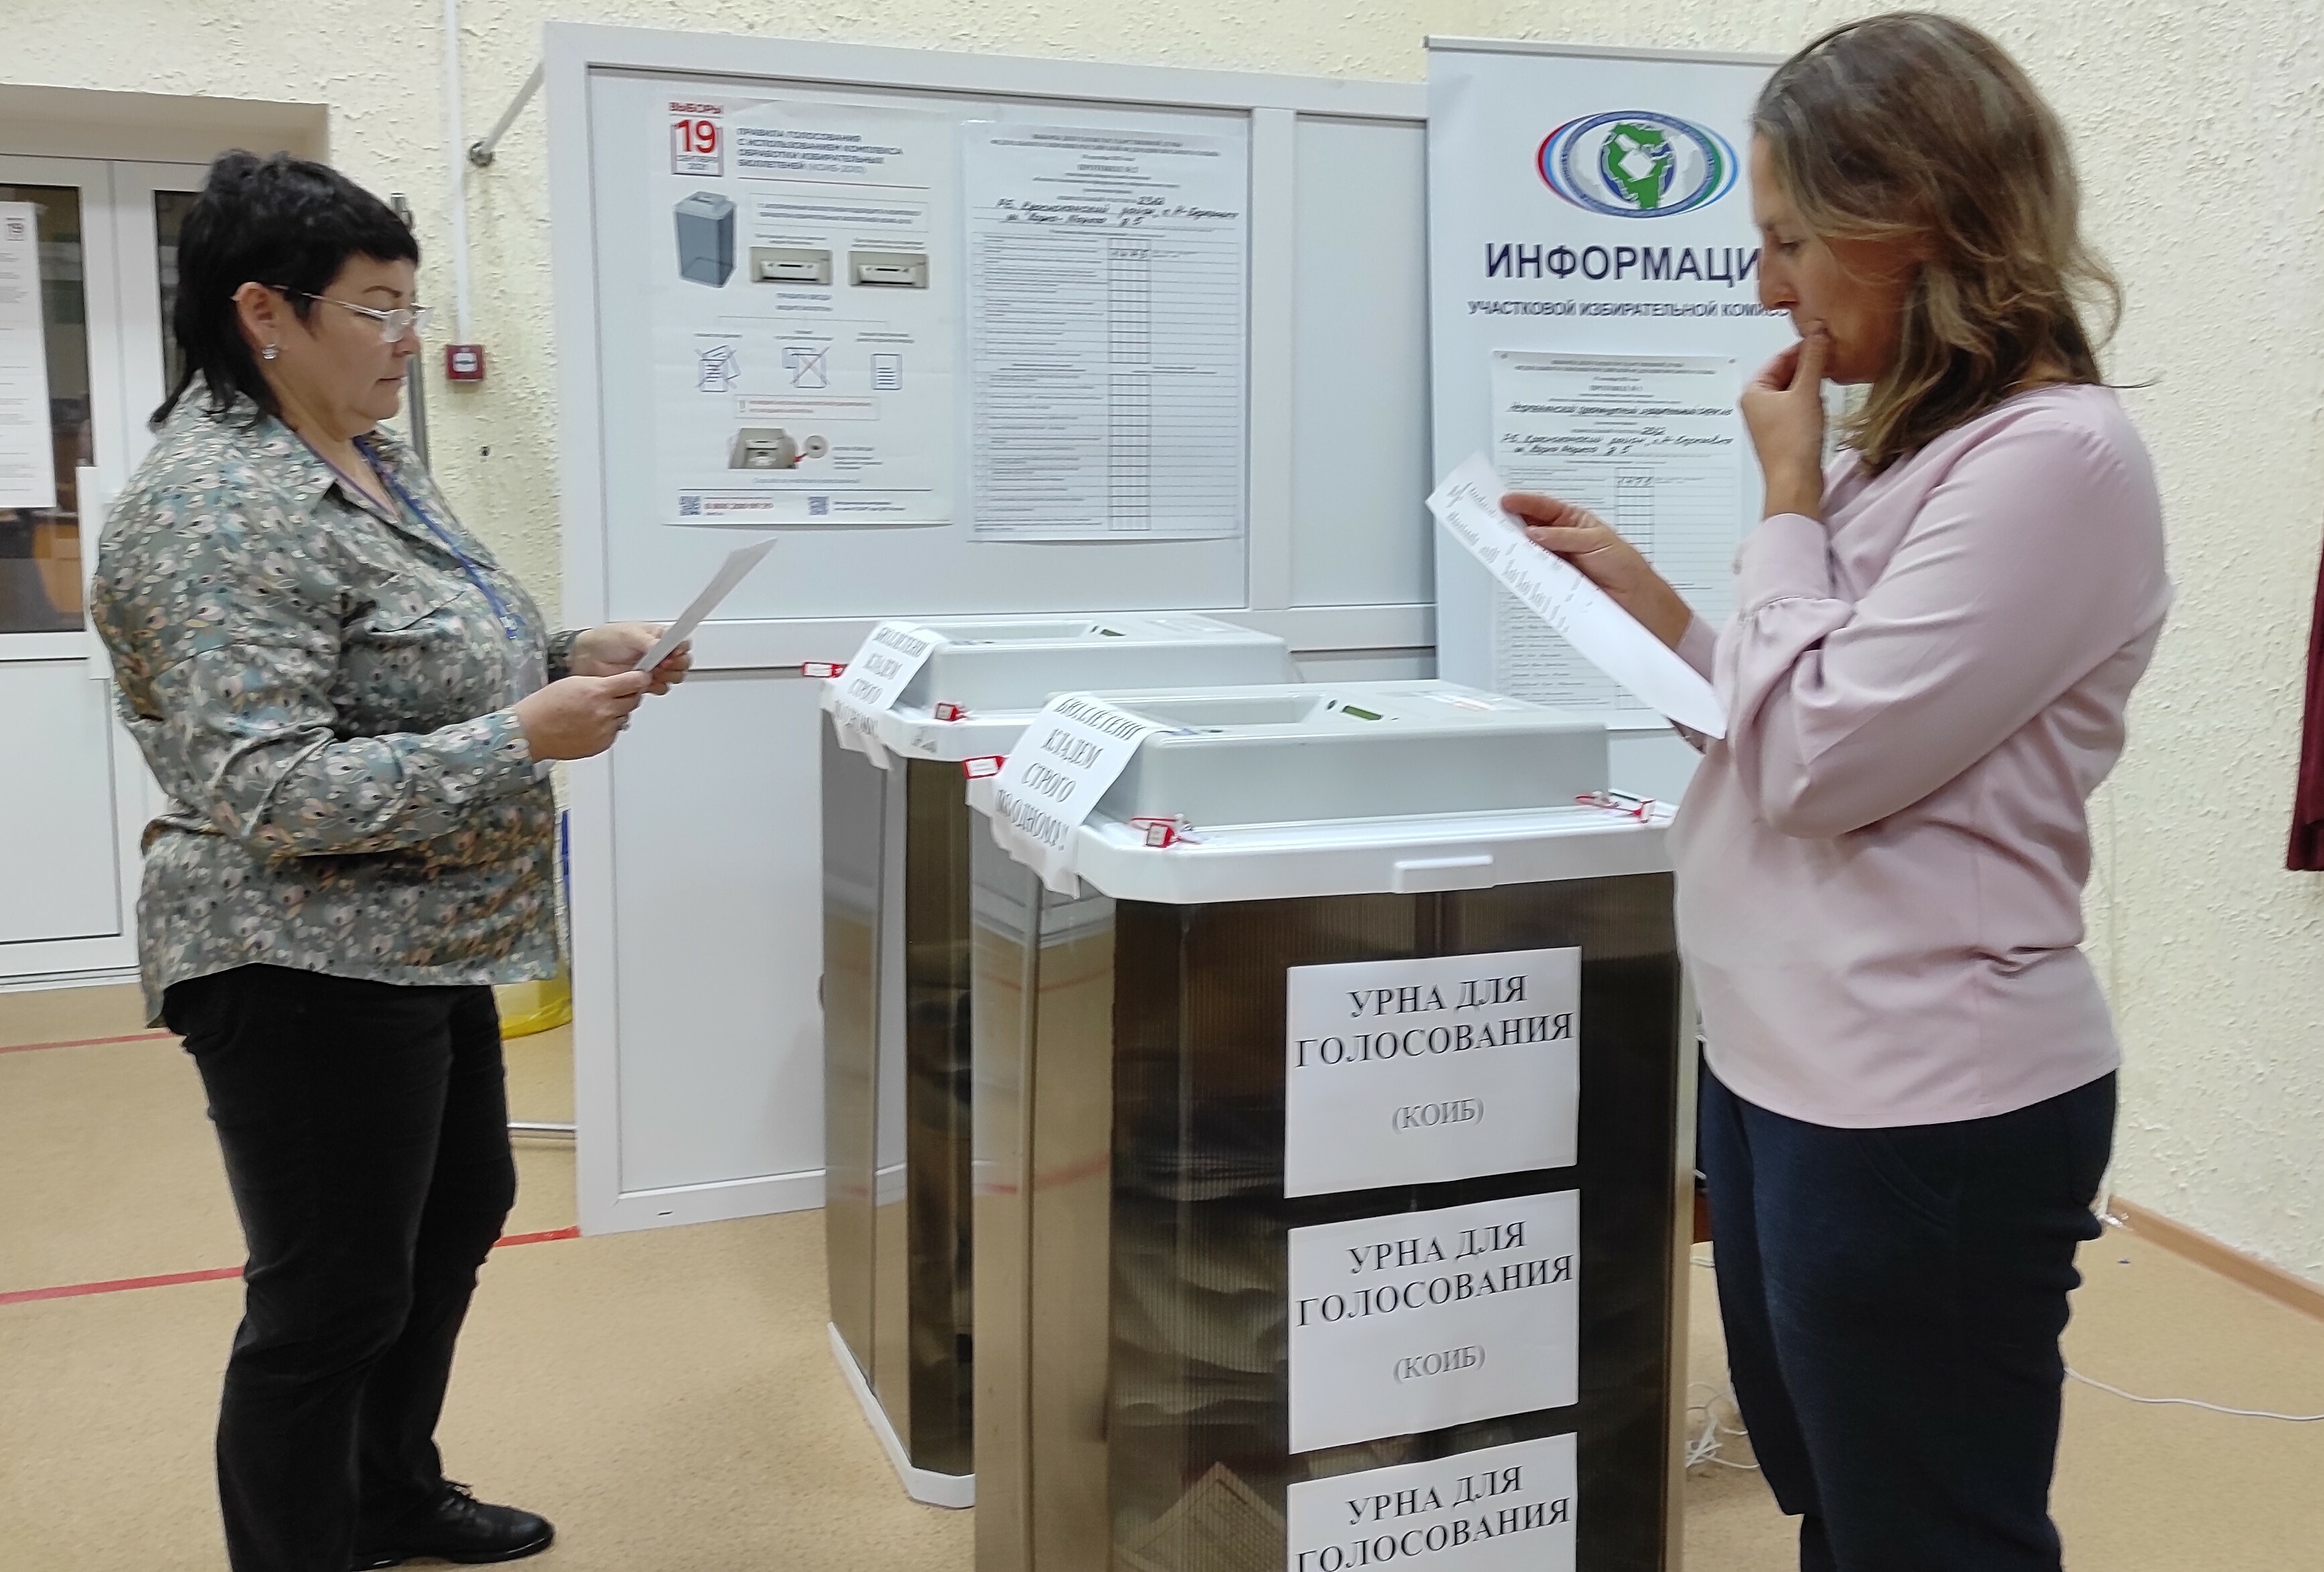 Подсчёт голосов - самая ответственная и самая интересная процедура в ходе голосования